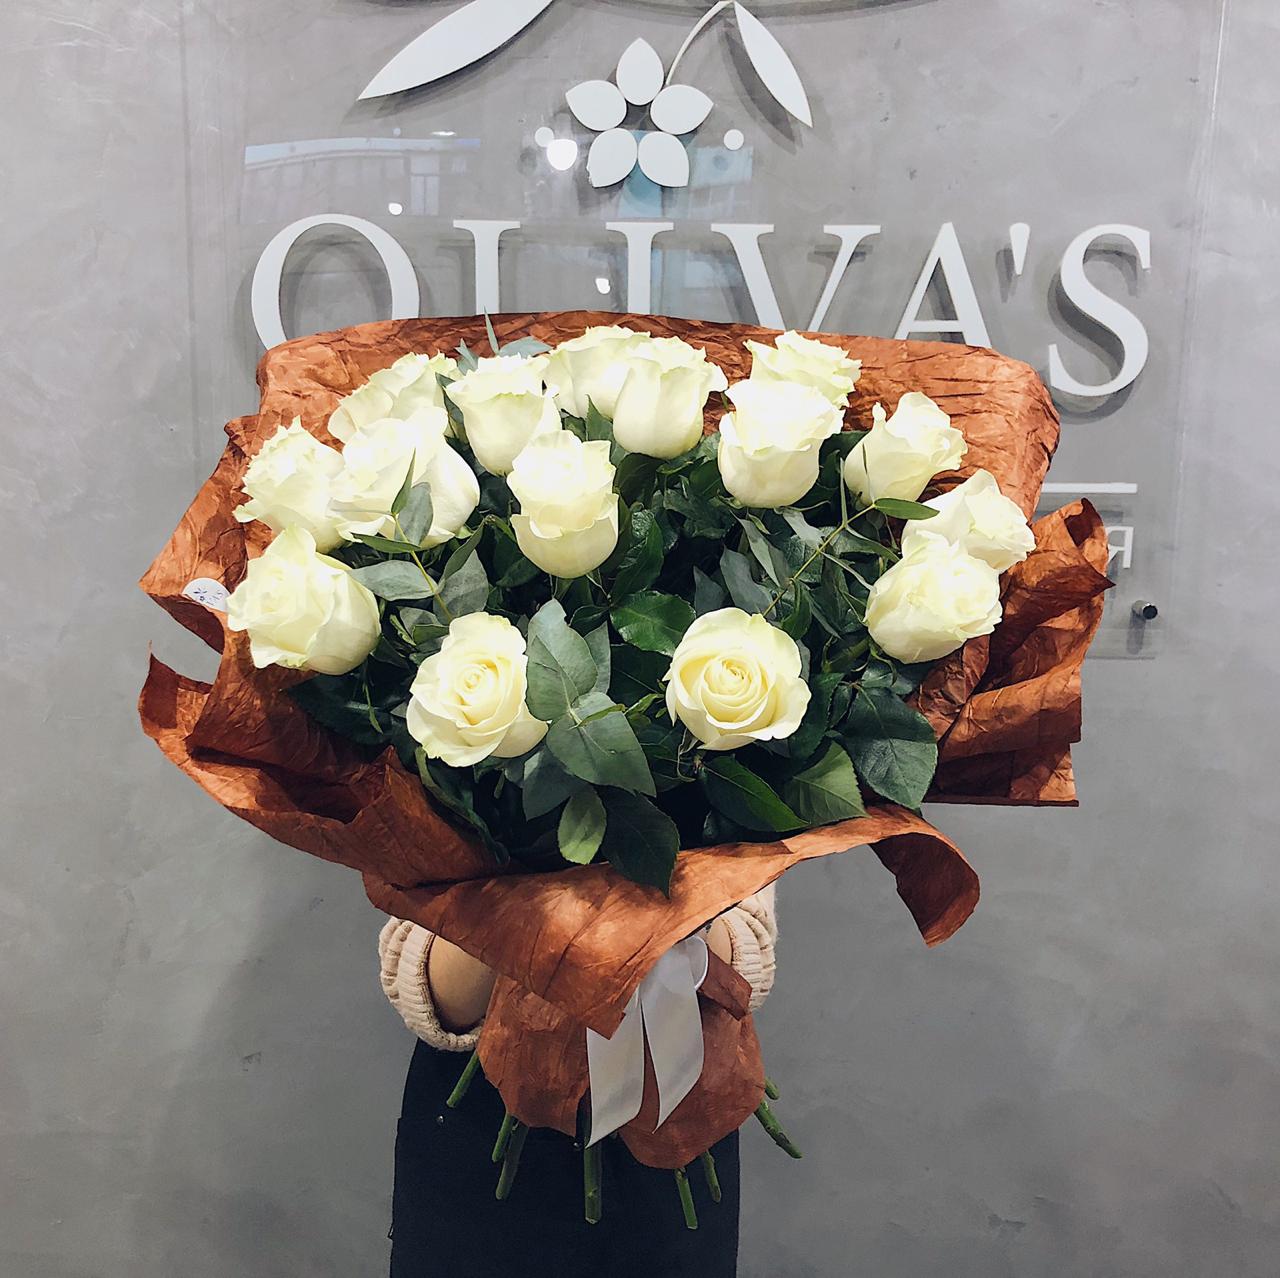 Шикарный букет из крупных белых роз - Доставка цветов Феодосия - Цветы  Olivas